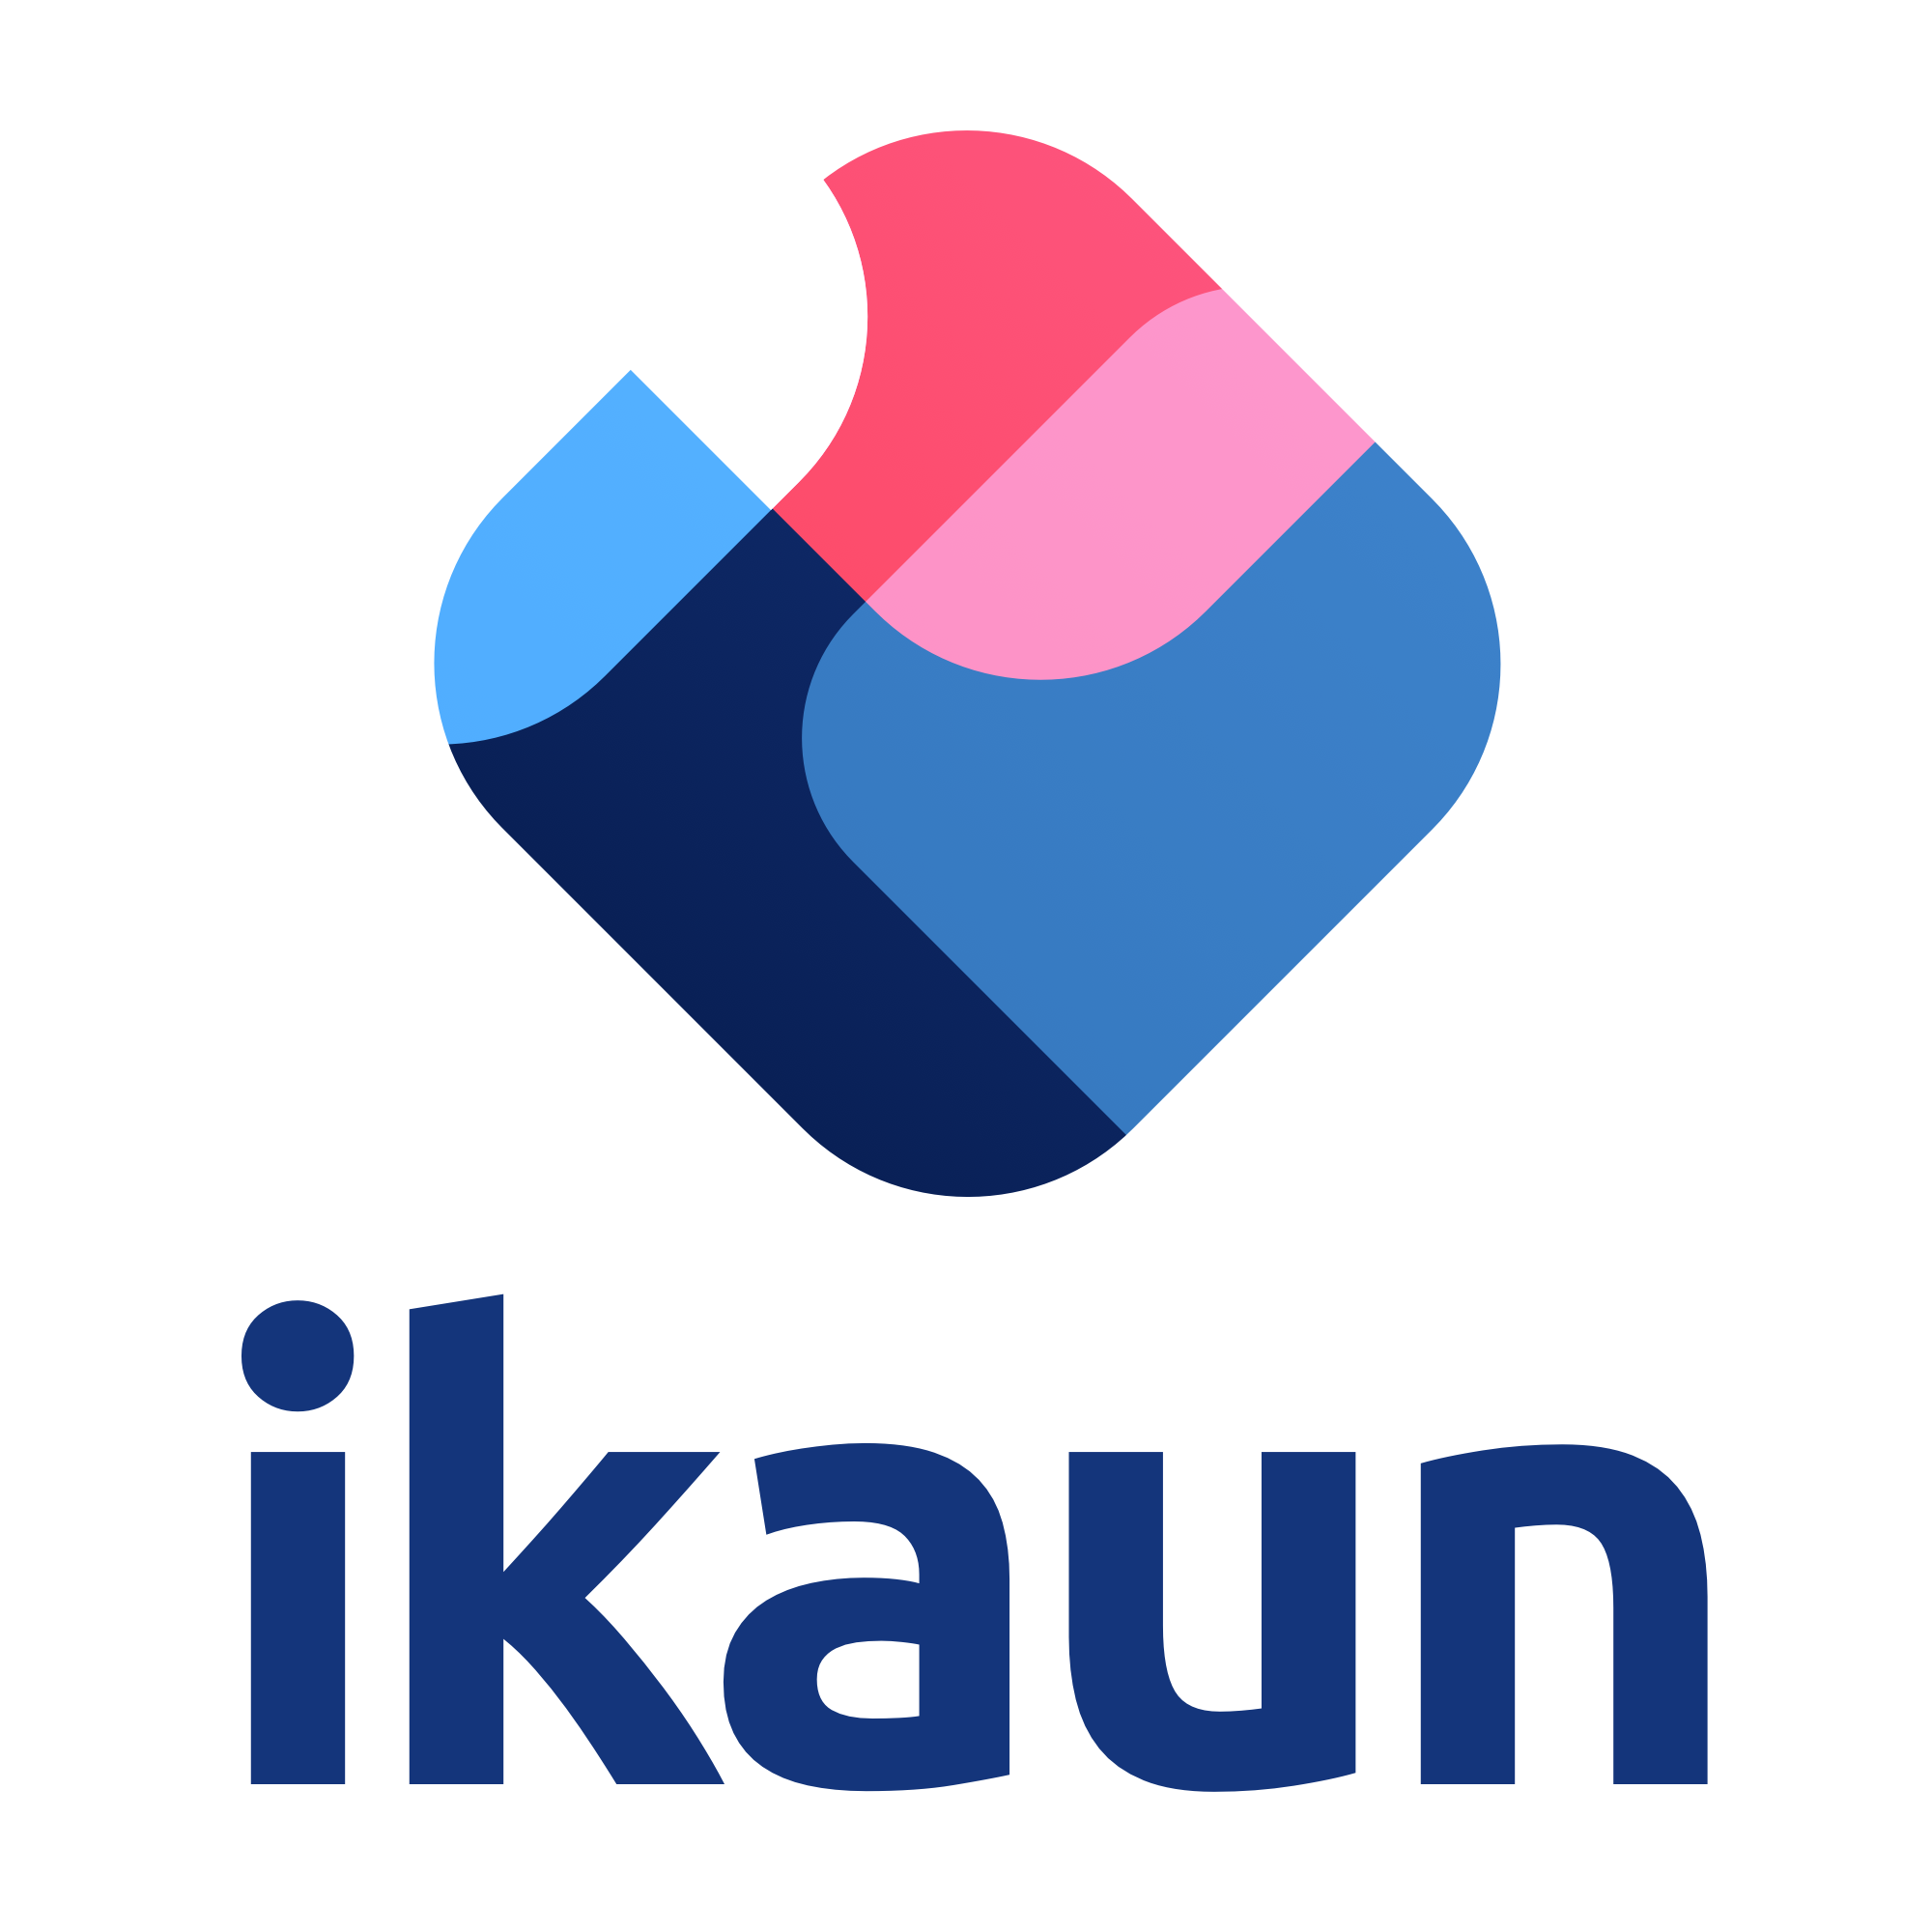 ikaun logo - Transparent - Blue - Small